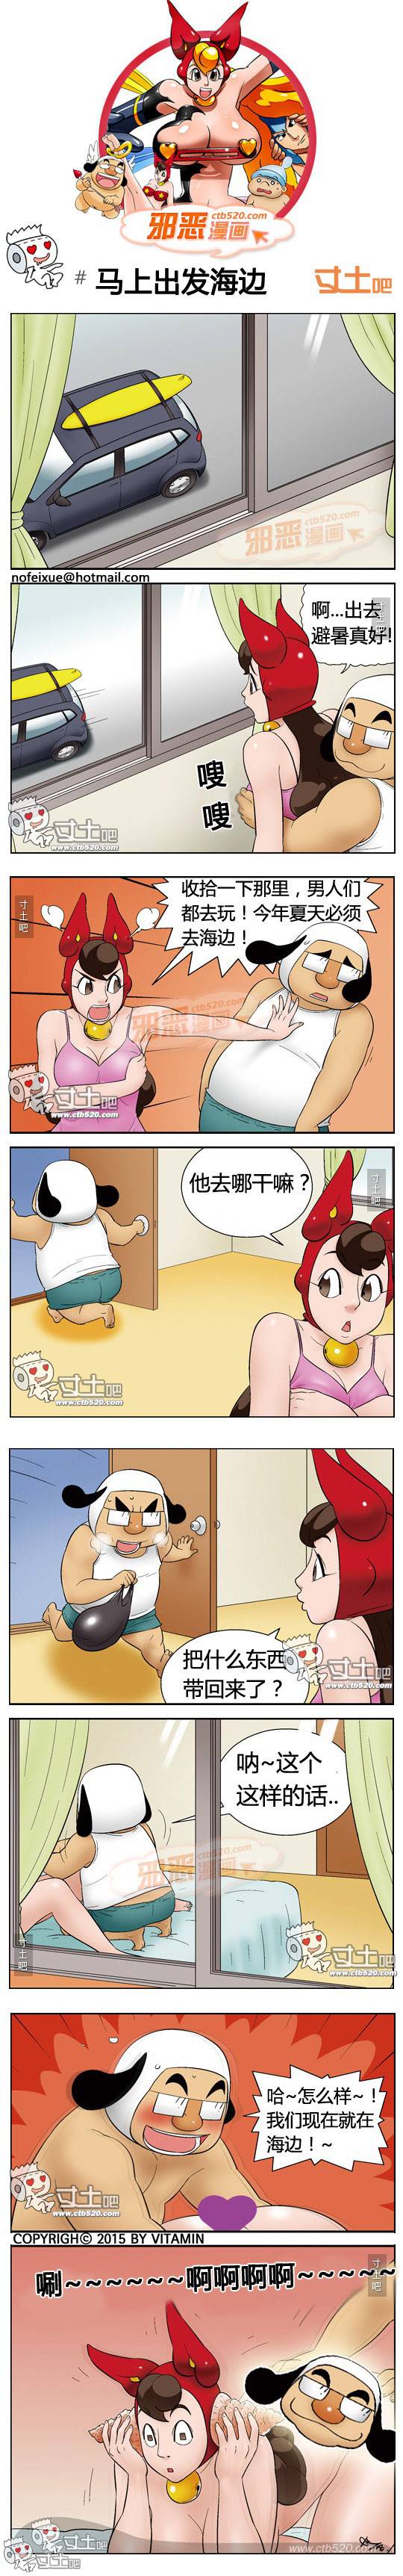 邪恶漫画爆笑囧图第323刊：逃出危机的丝袜